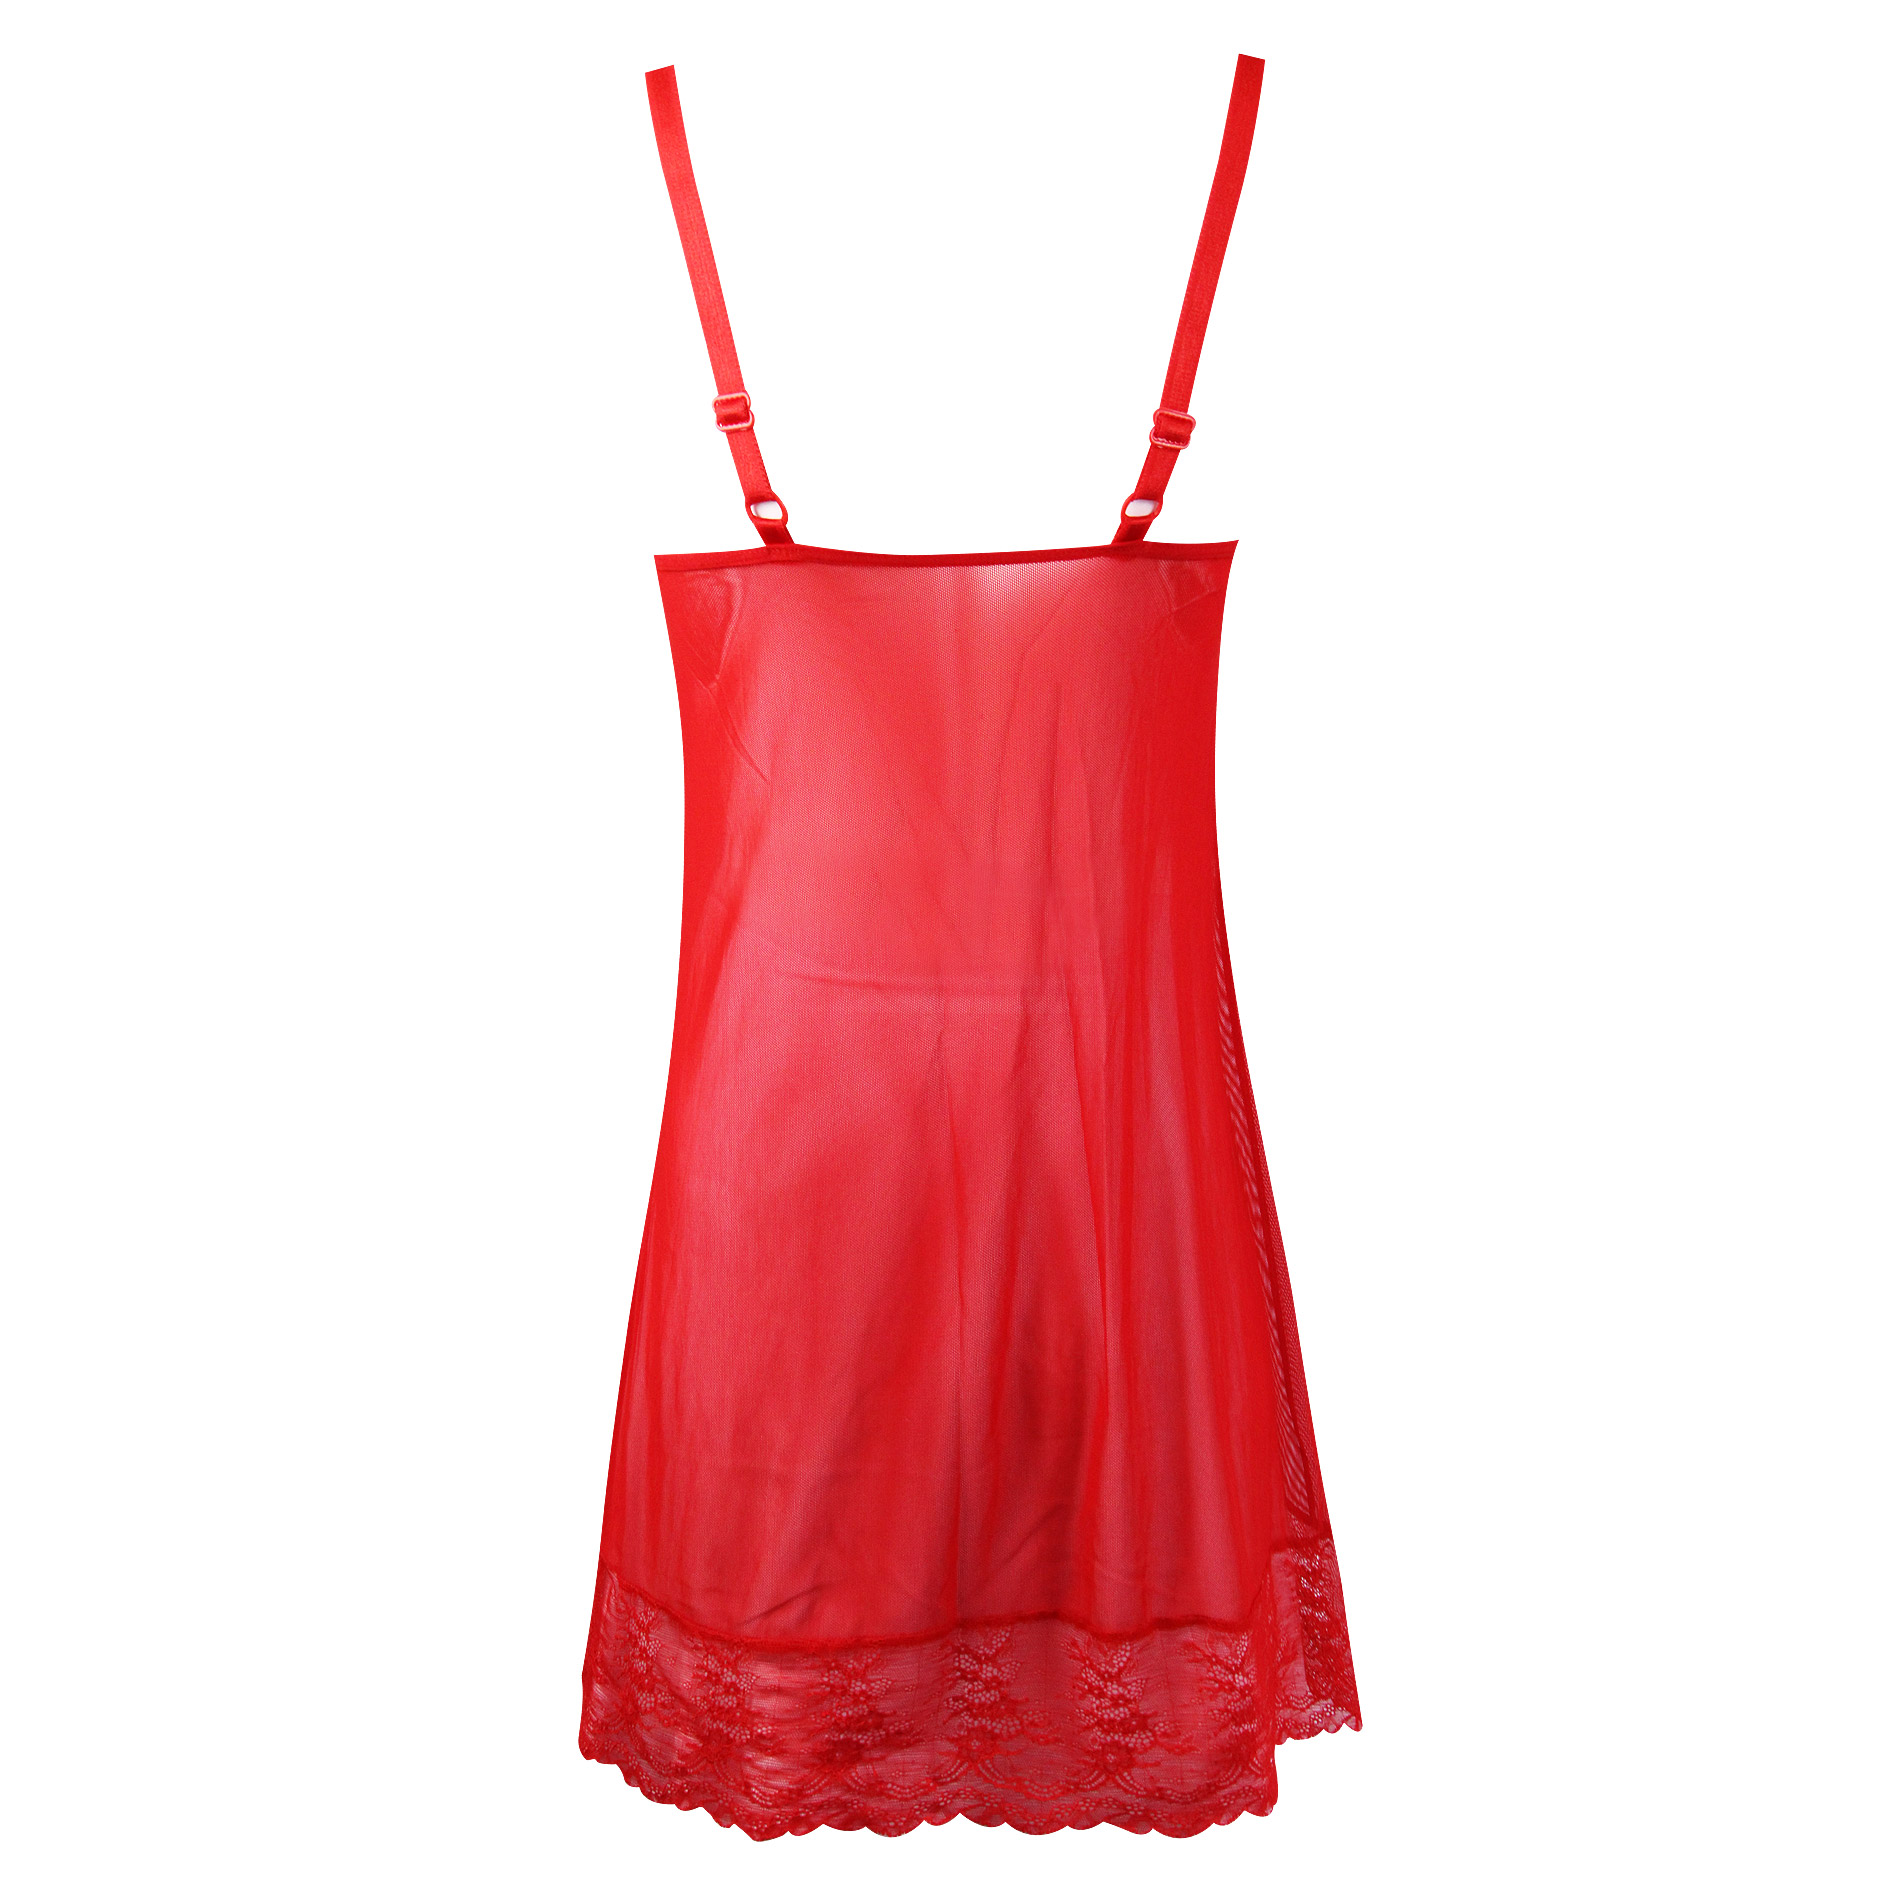 لباس خواب زنانه ماییلدا مدل 3685-804 رنگ قرمز -  - 5